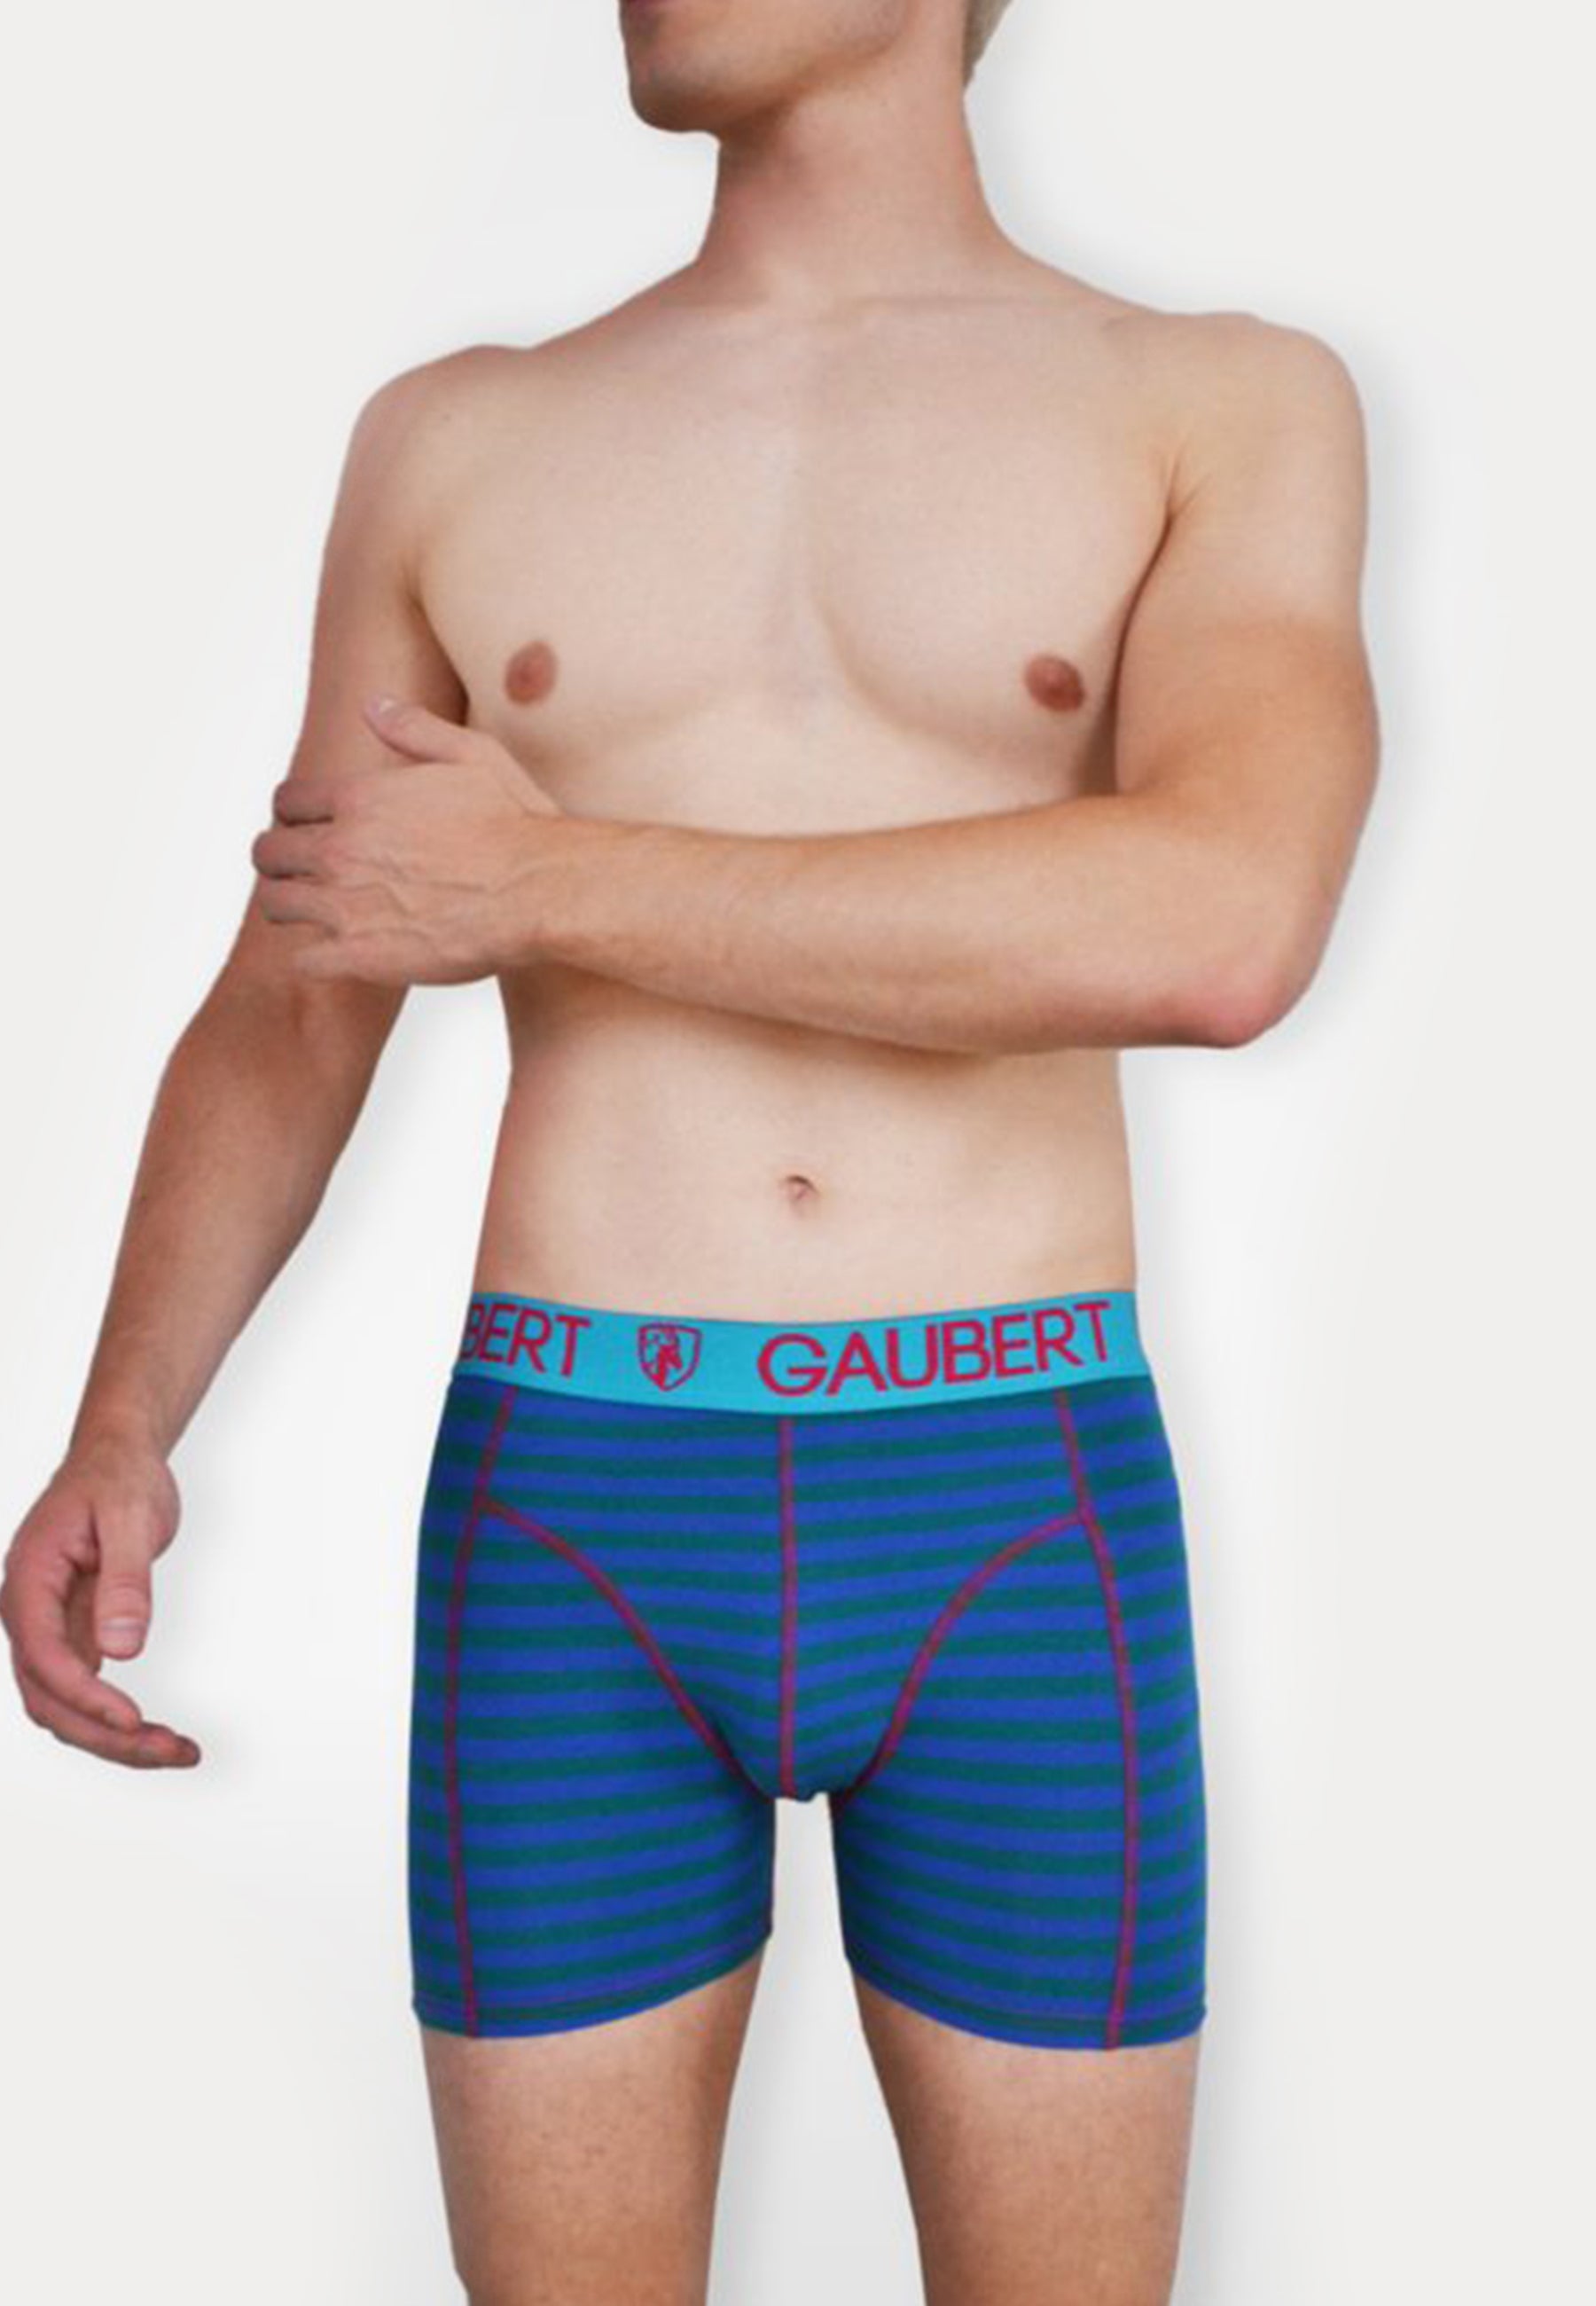 Een man met een gestreepte katoenen boxershort van het merk Gaubert